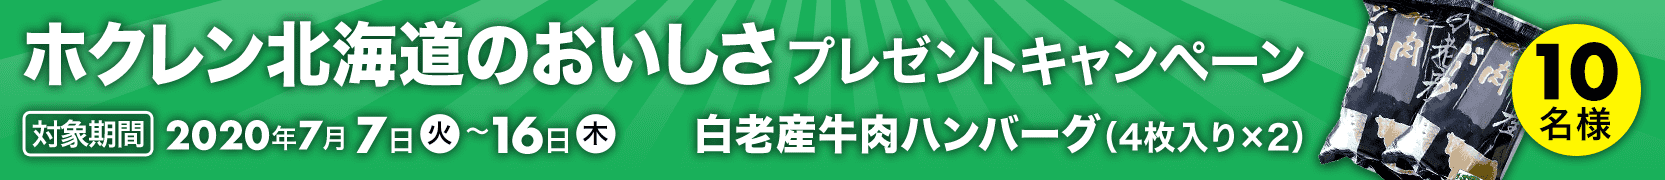 【202007】ホクレン北海道のおいしさプレゼントキャンペーン